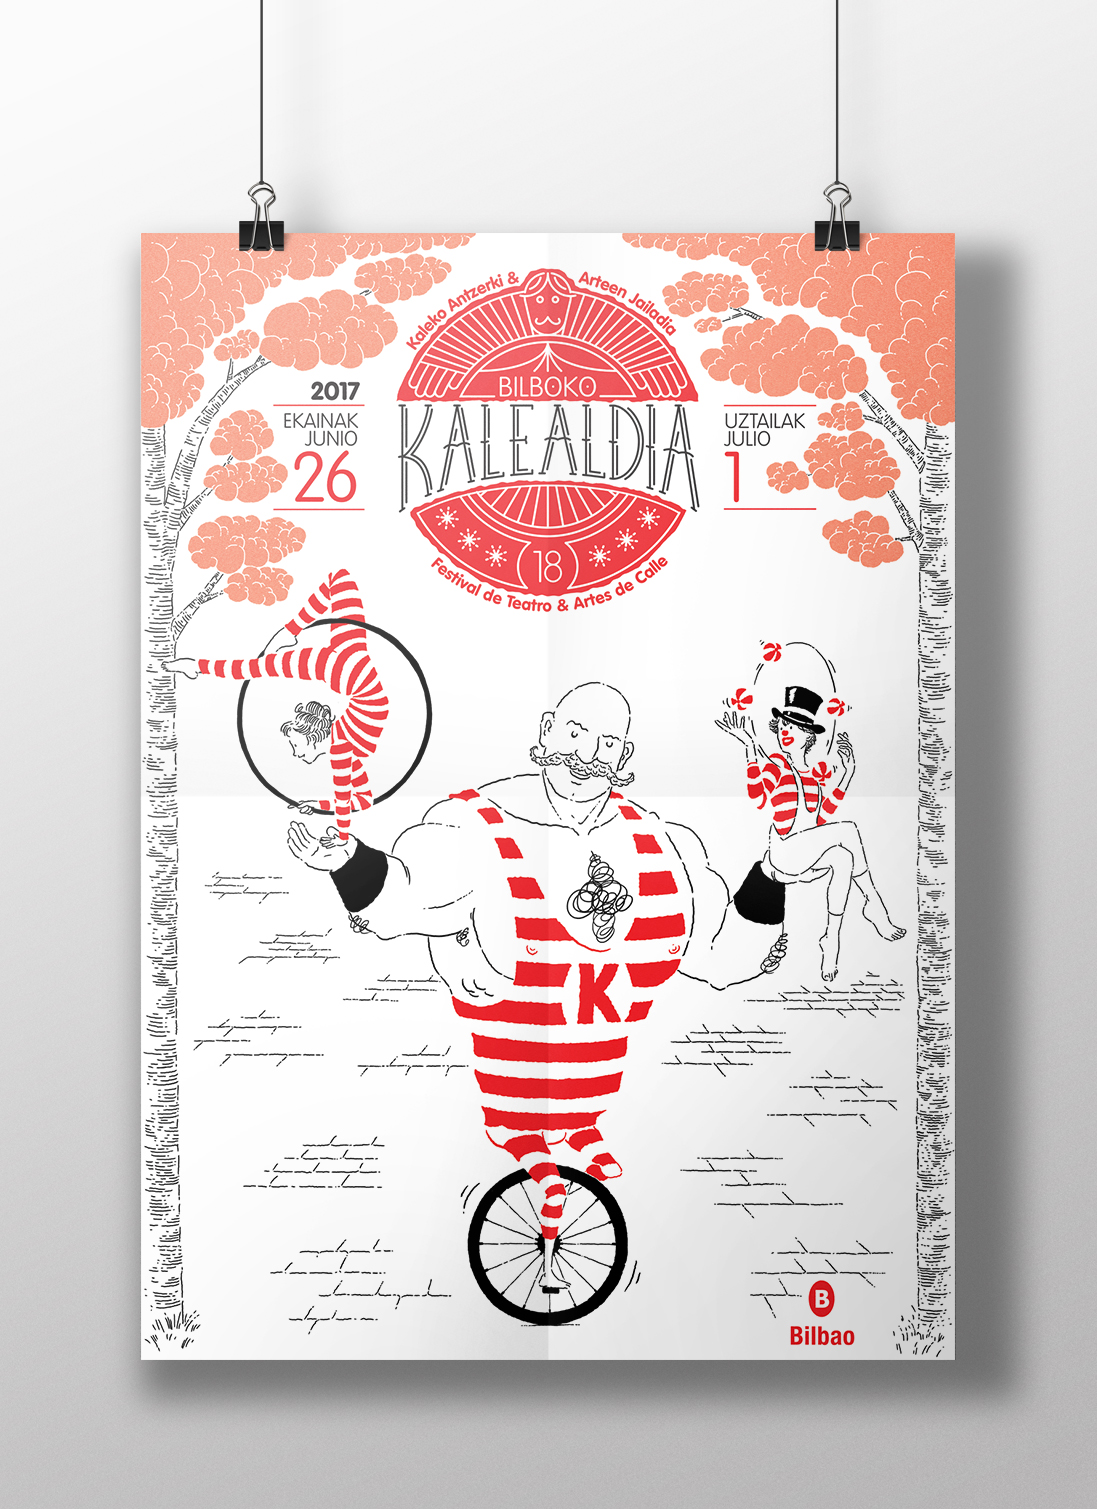 Bilboko Kalealdia by Asier Iturralde - Creative Work - $i